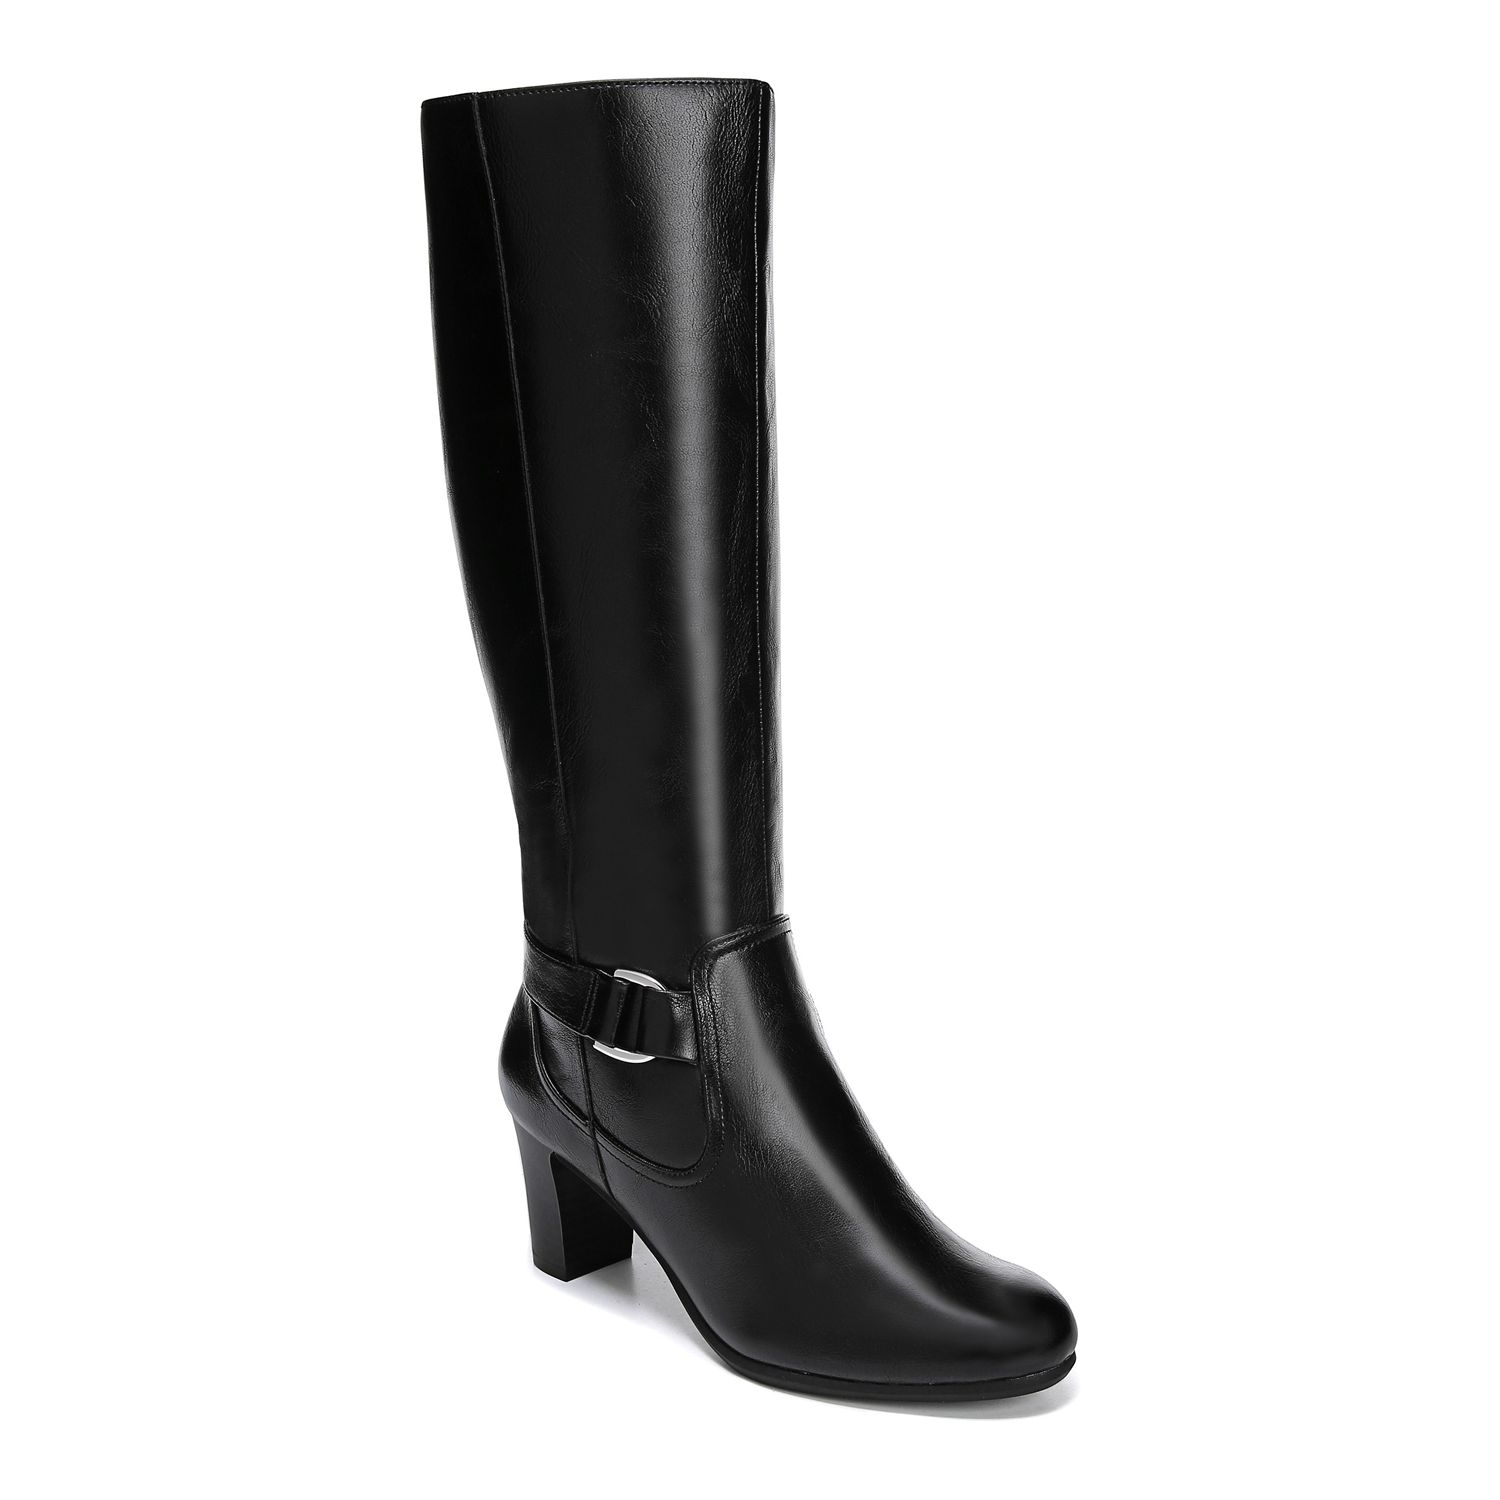 women's high heel dress boots